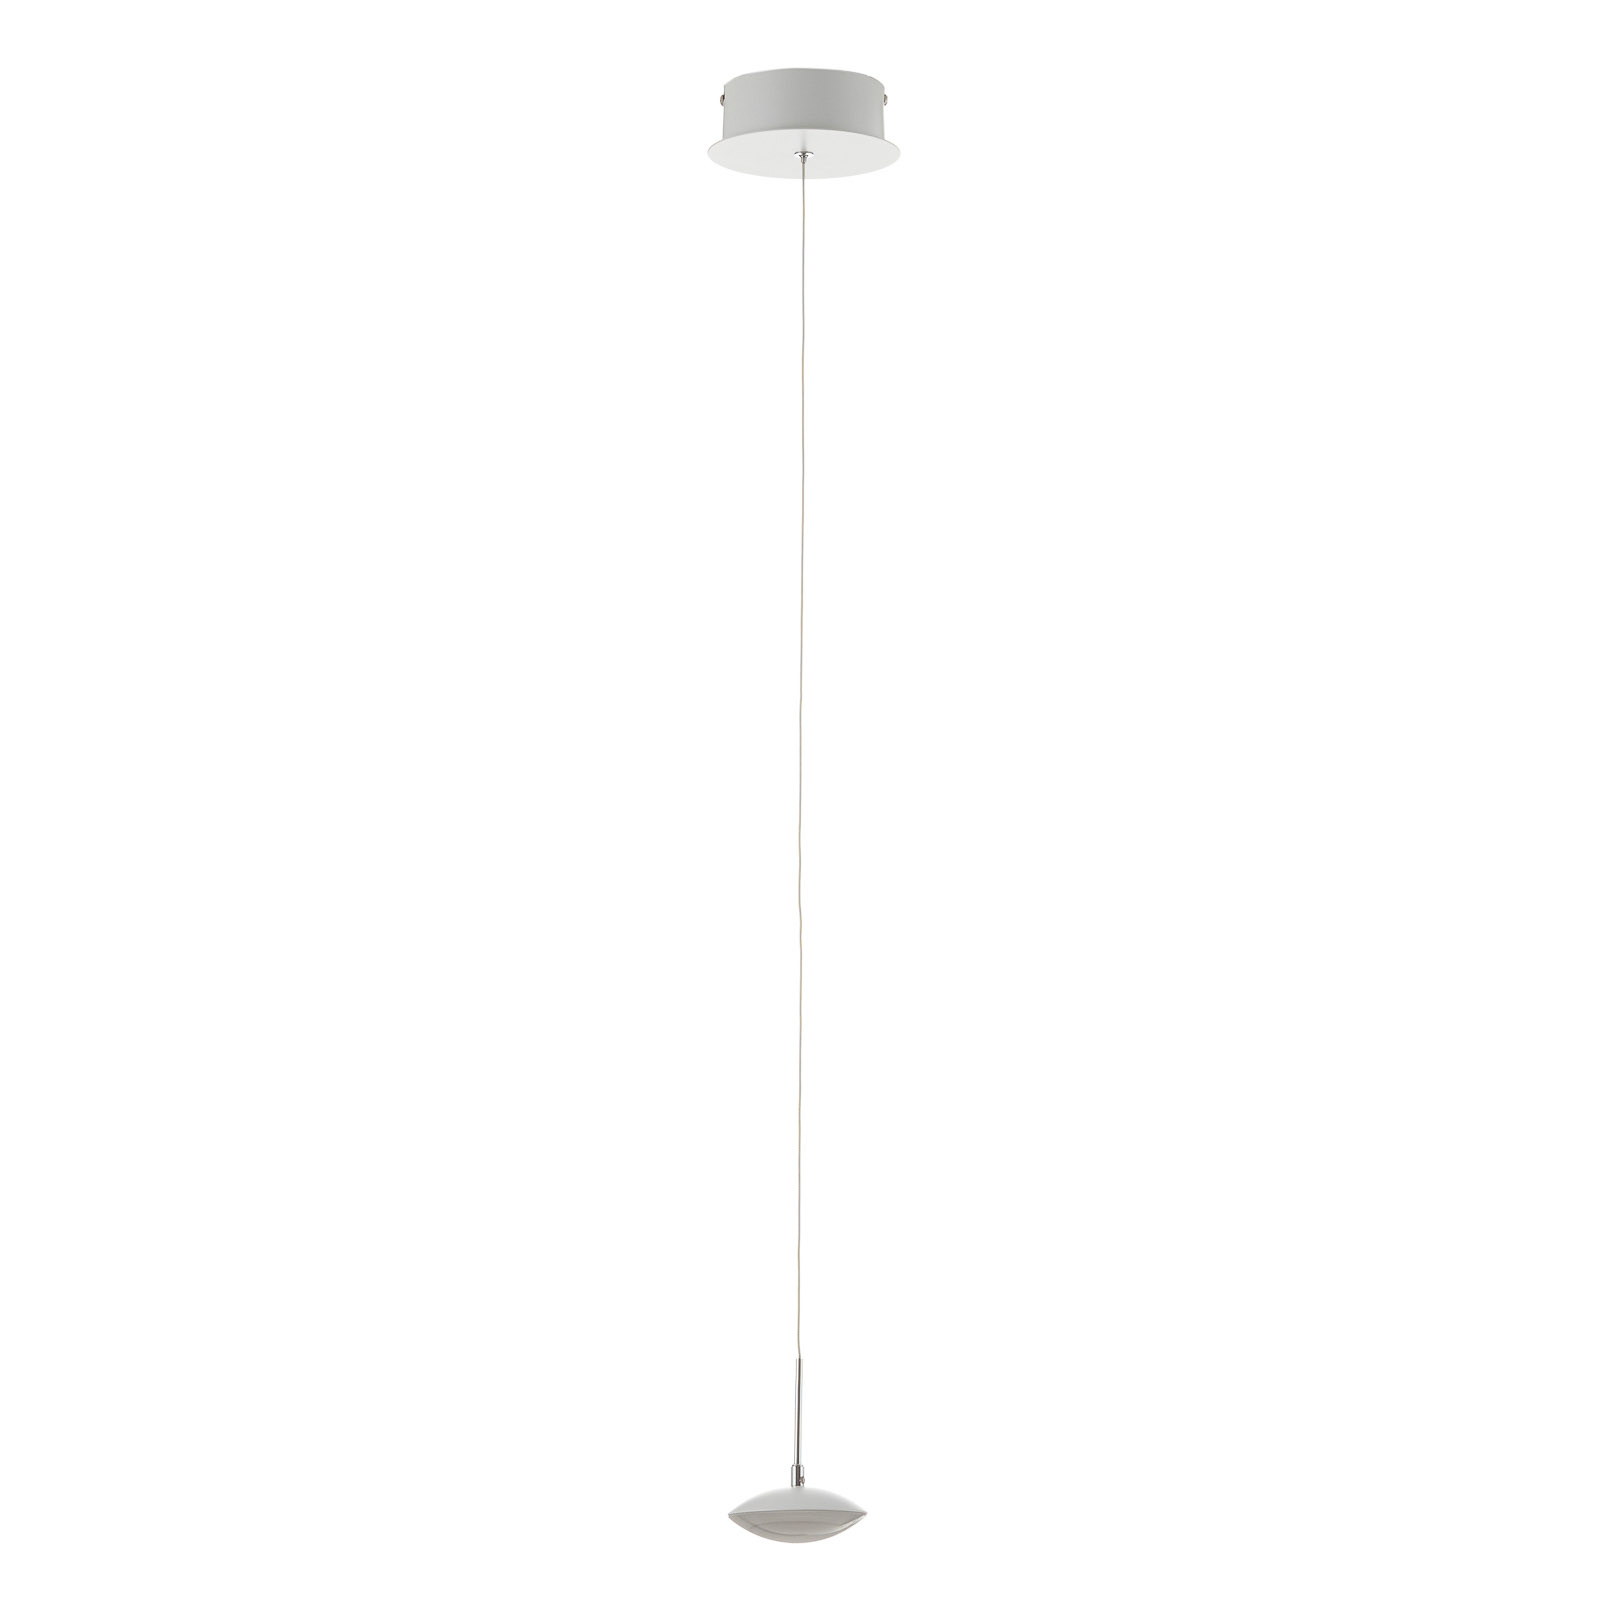 Hale - a delicate LED pendant lamp